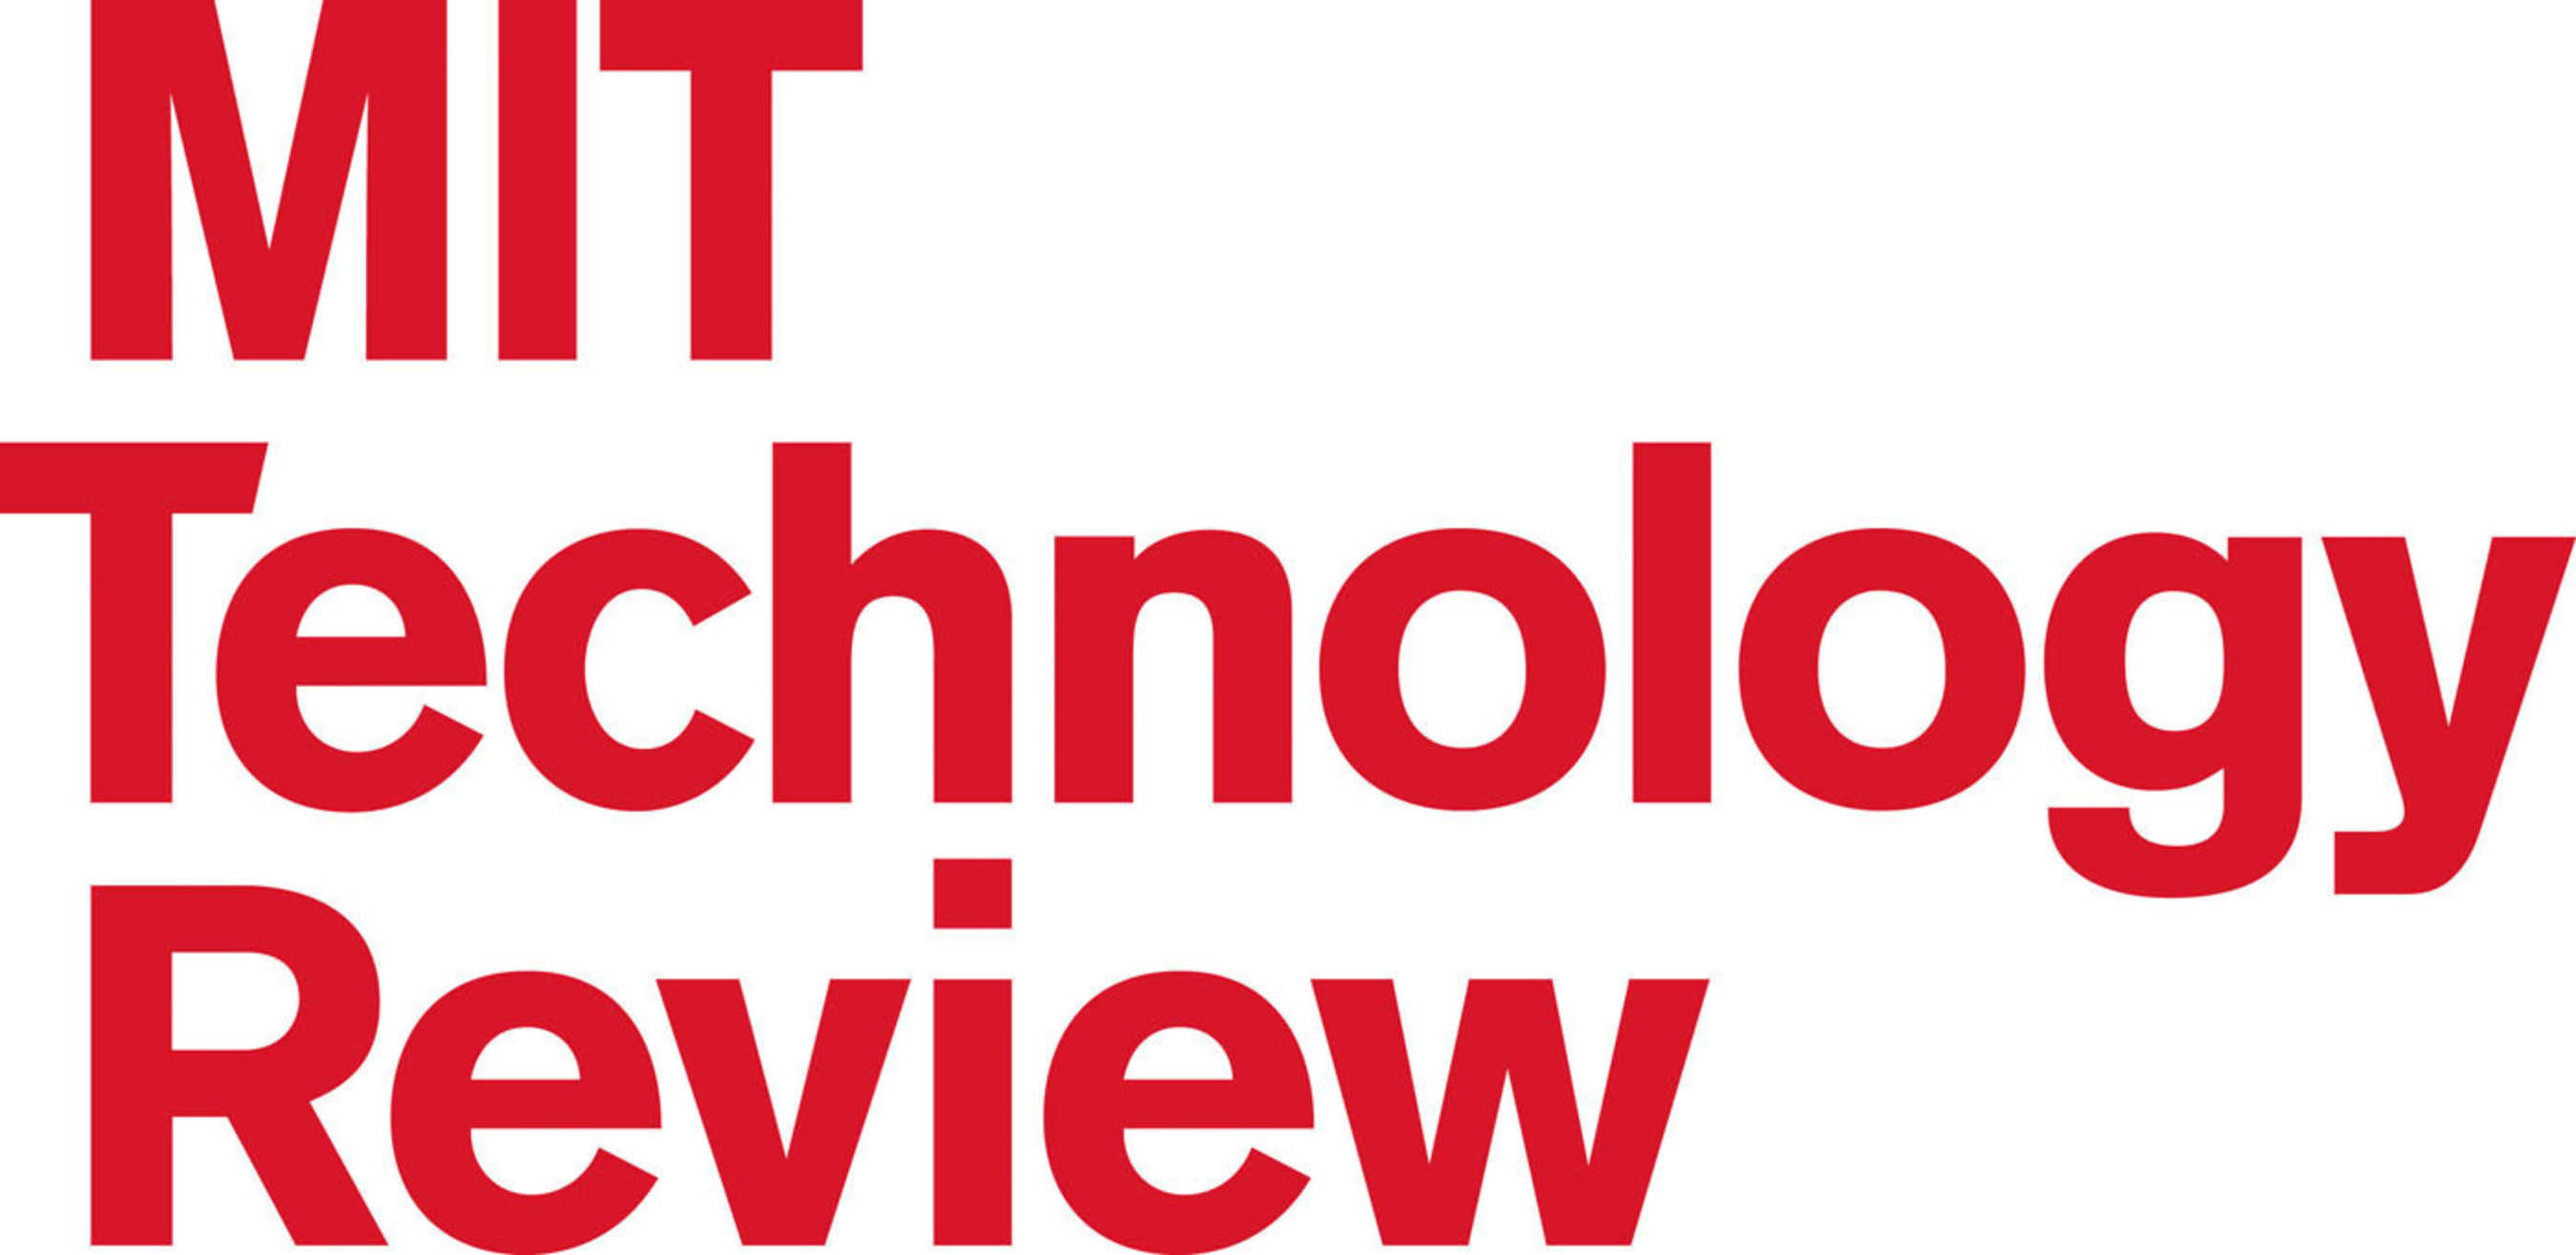 MIT Technology Review Logo. (PRNewsFoto/MIT Technology Review)